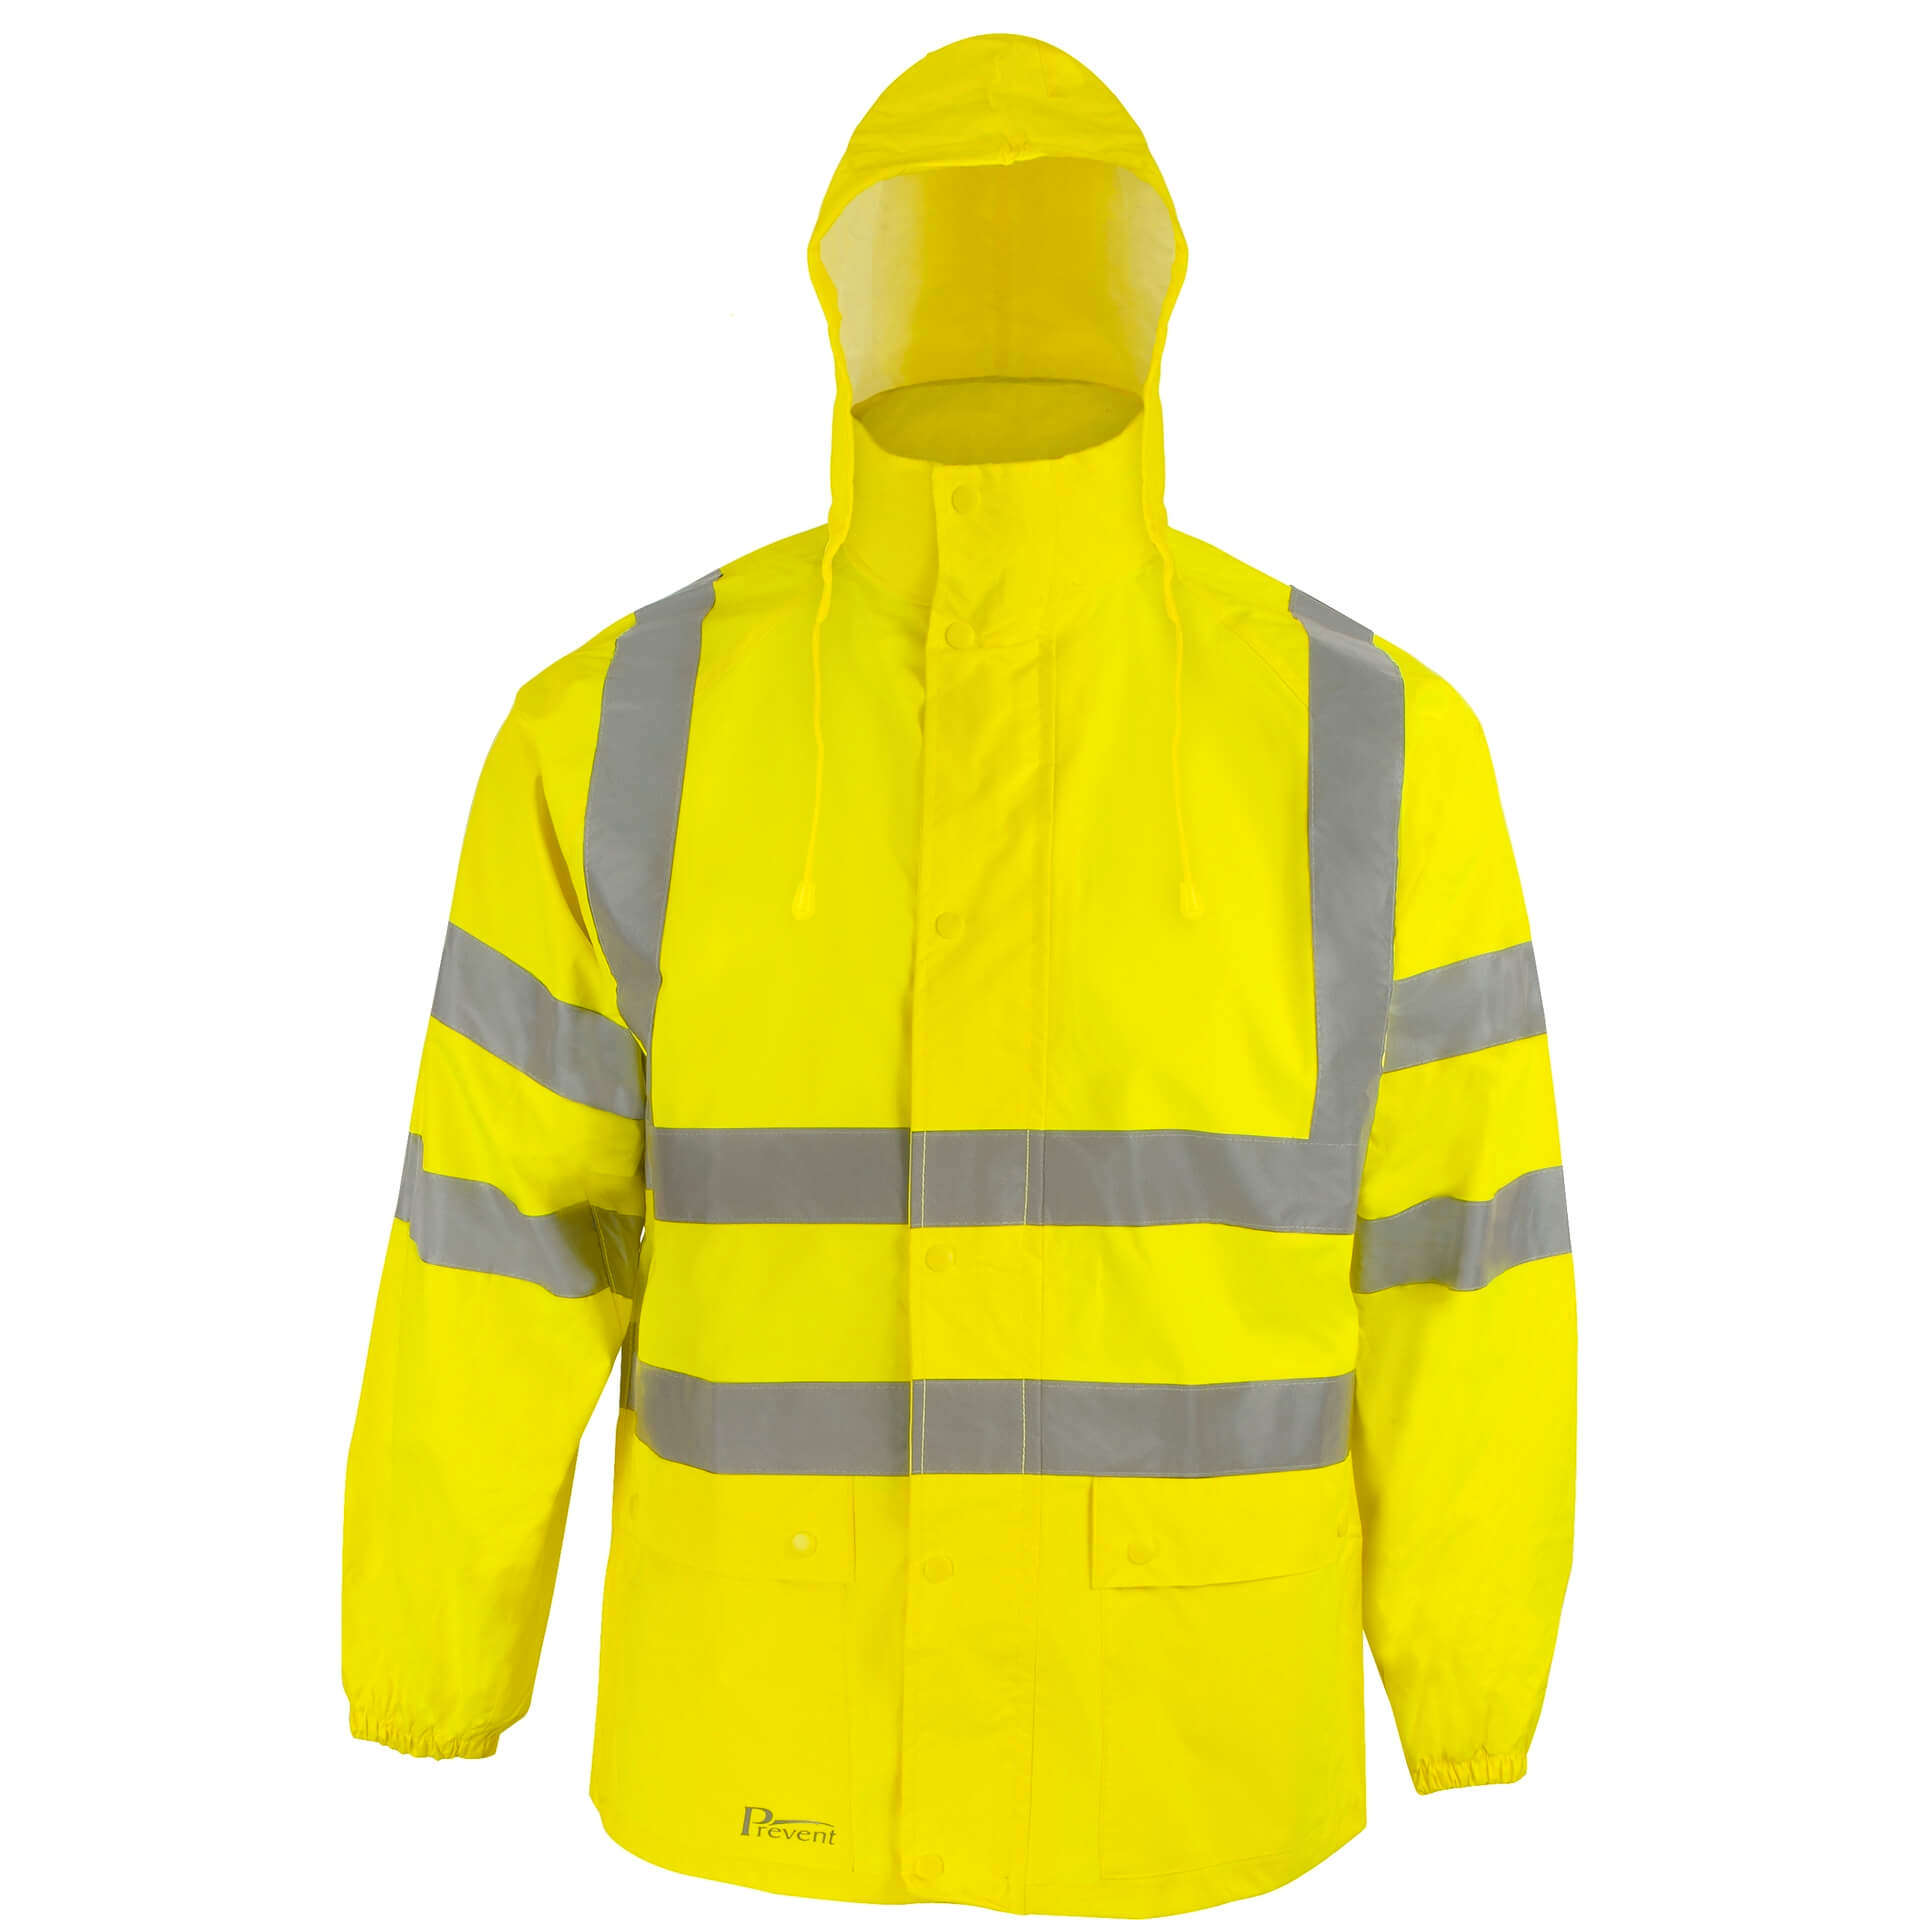 ASATEX Prevent Warnschutz Regenjacke gelb